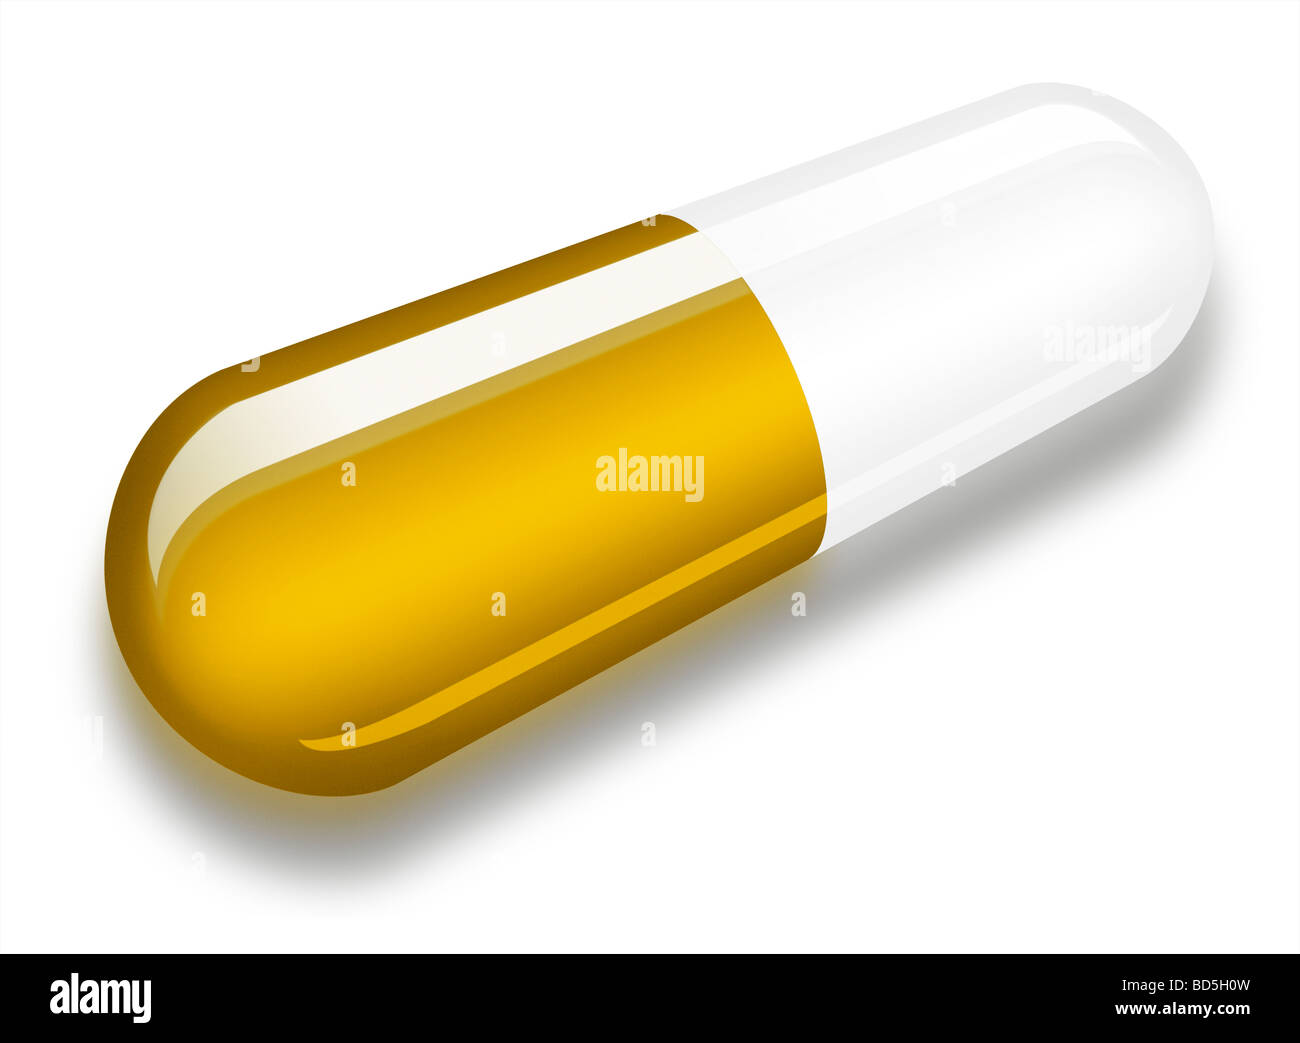 Illustrazione di un singolo Tamiflu capsule su uno sfondo bianco con un'ombra Foto Stock